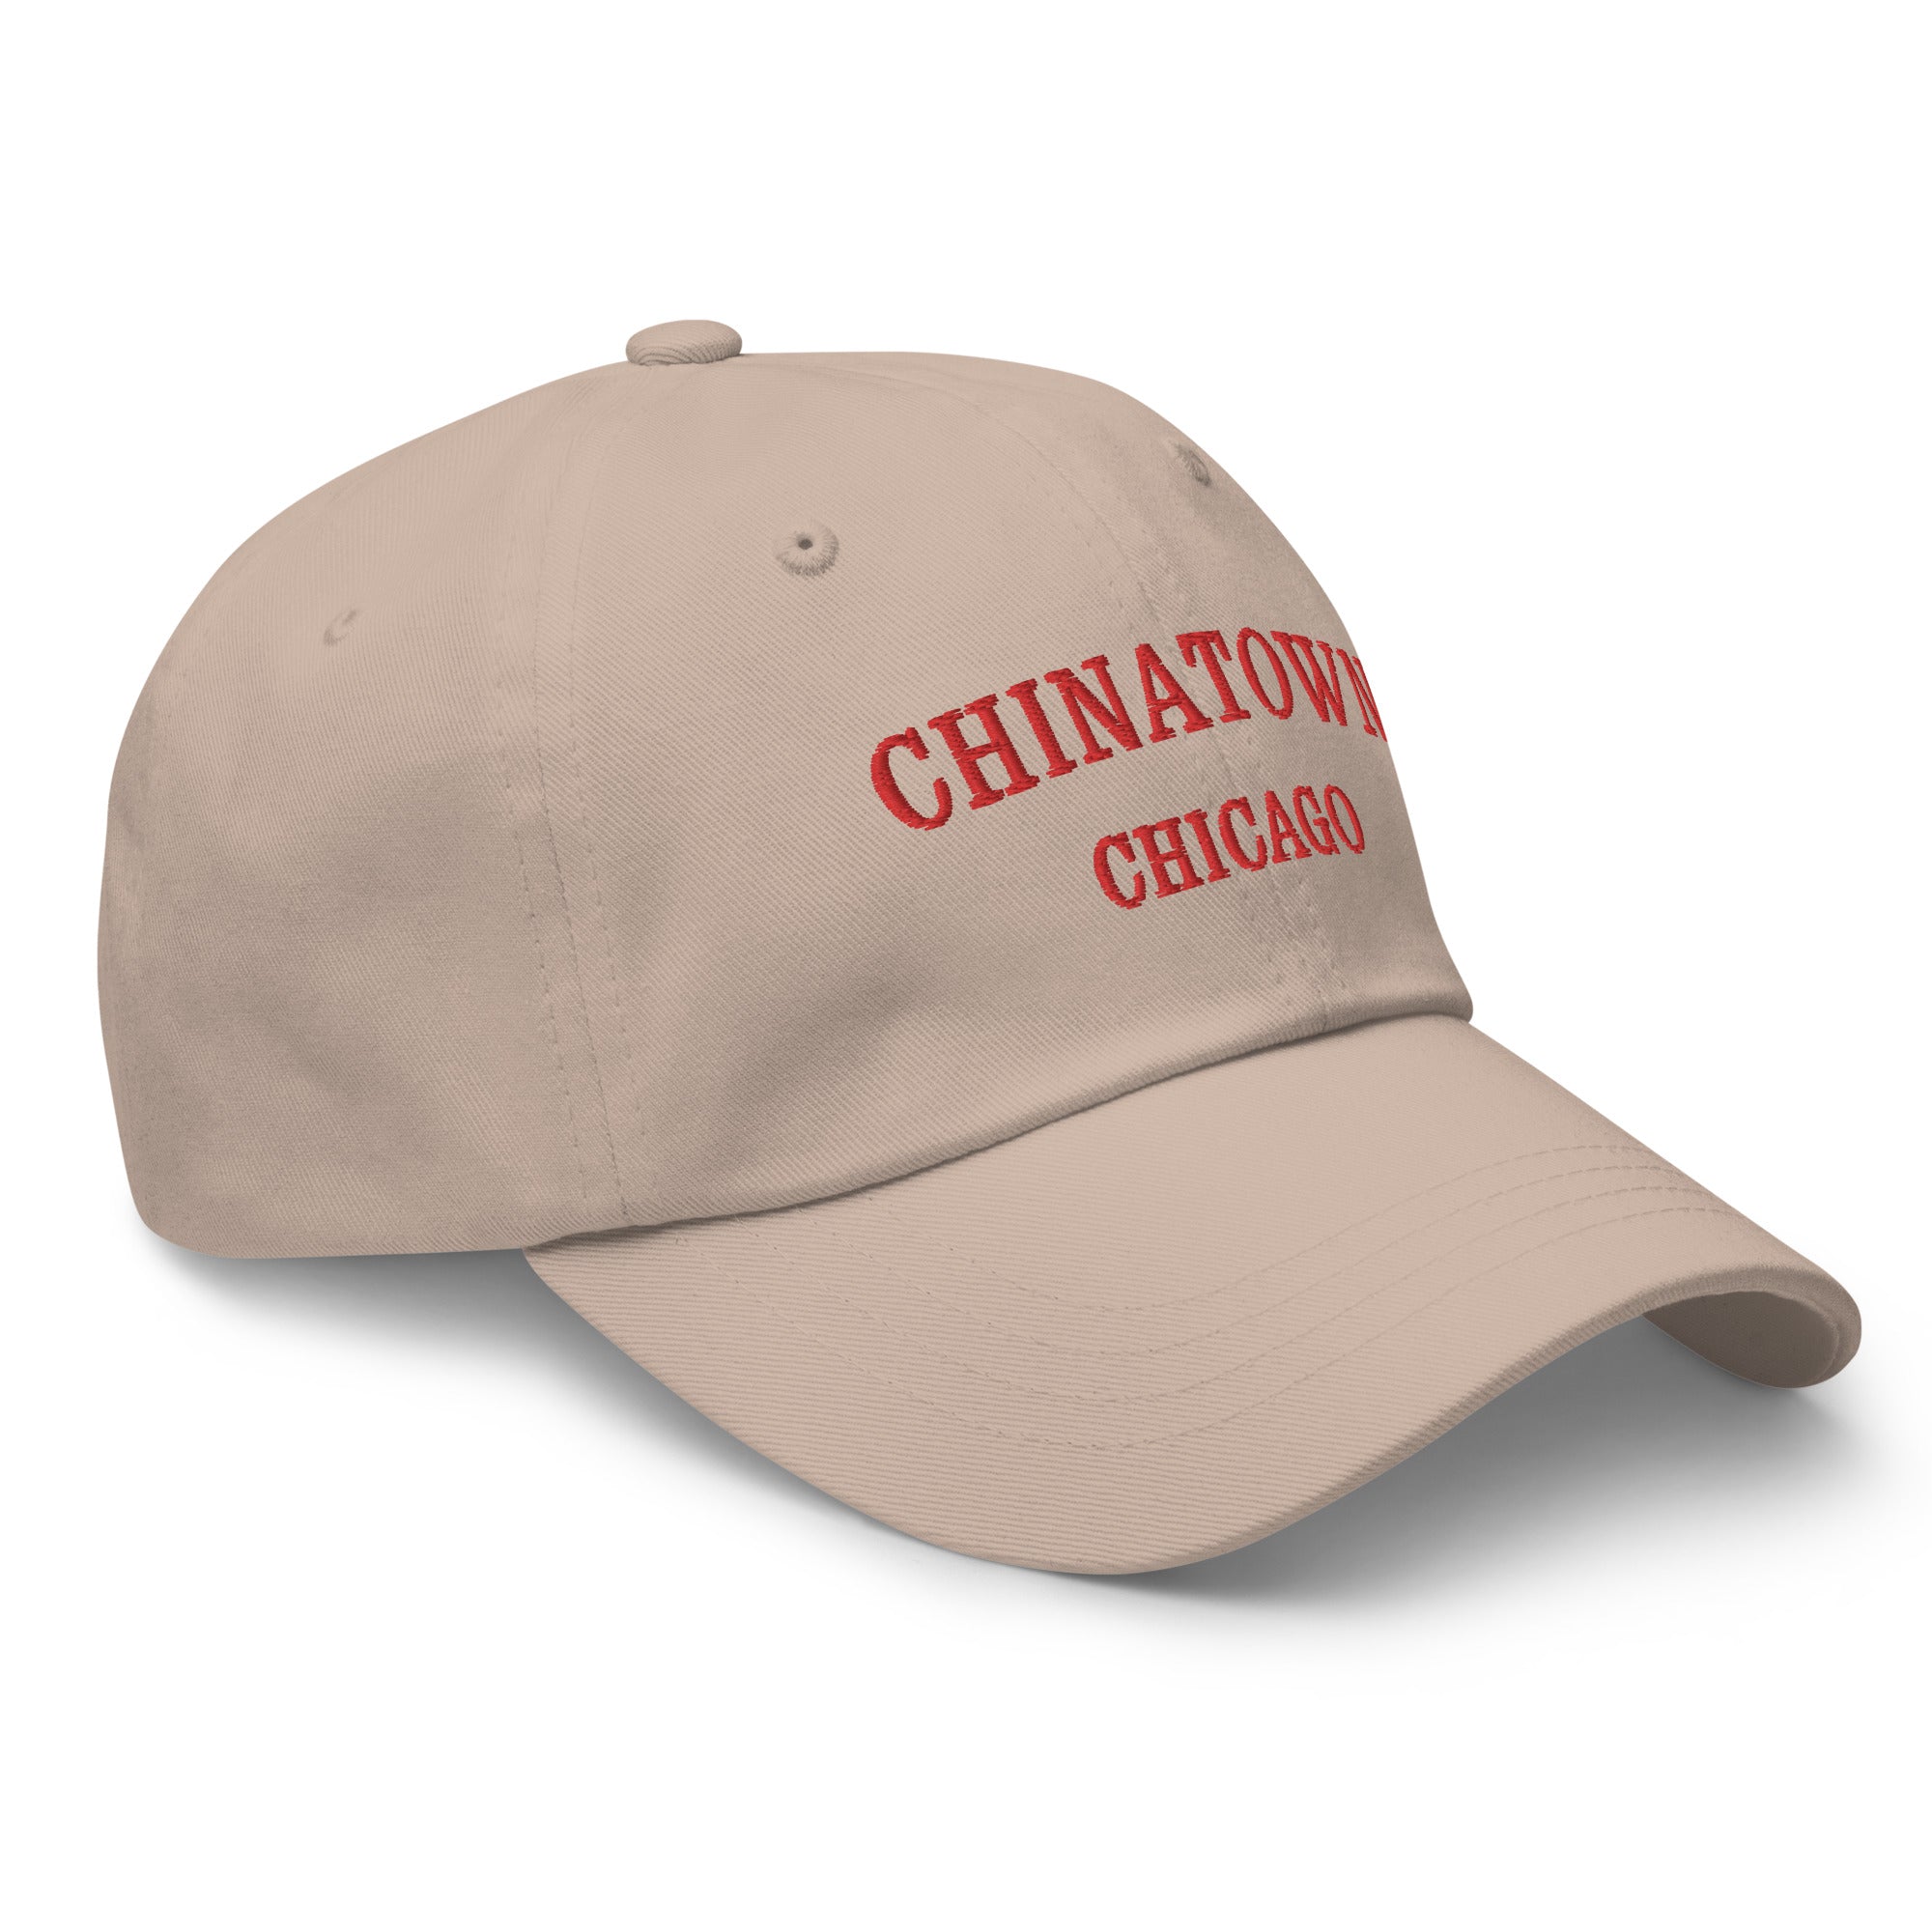 Chinatown Chicago Dad Hat